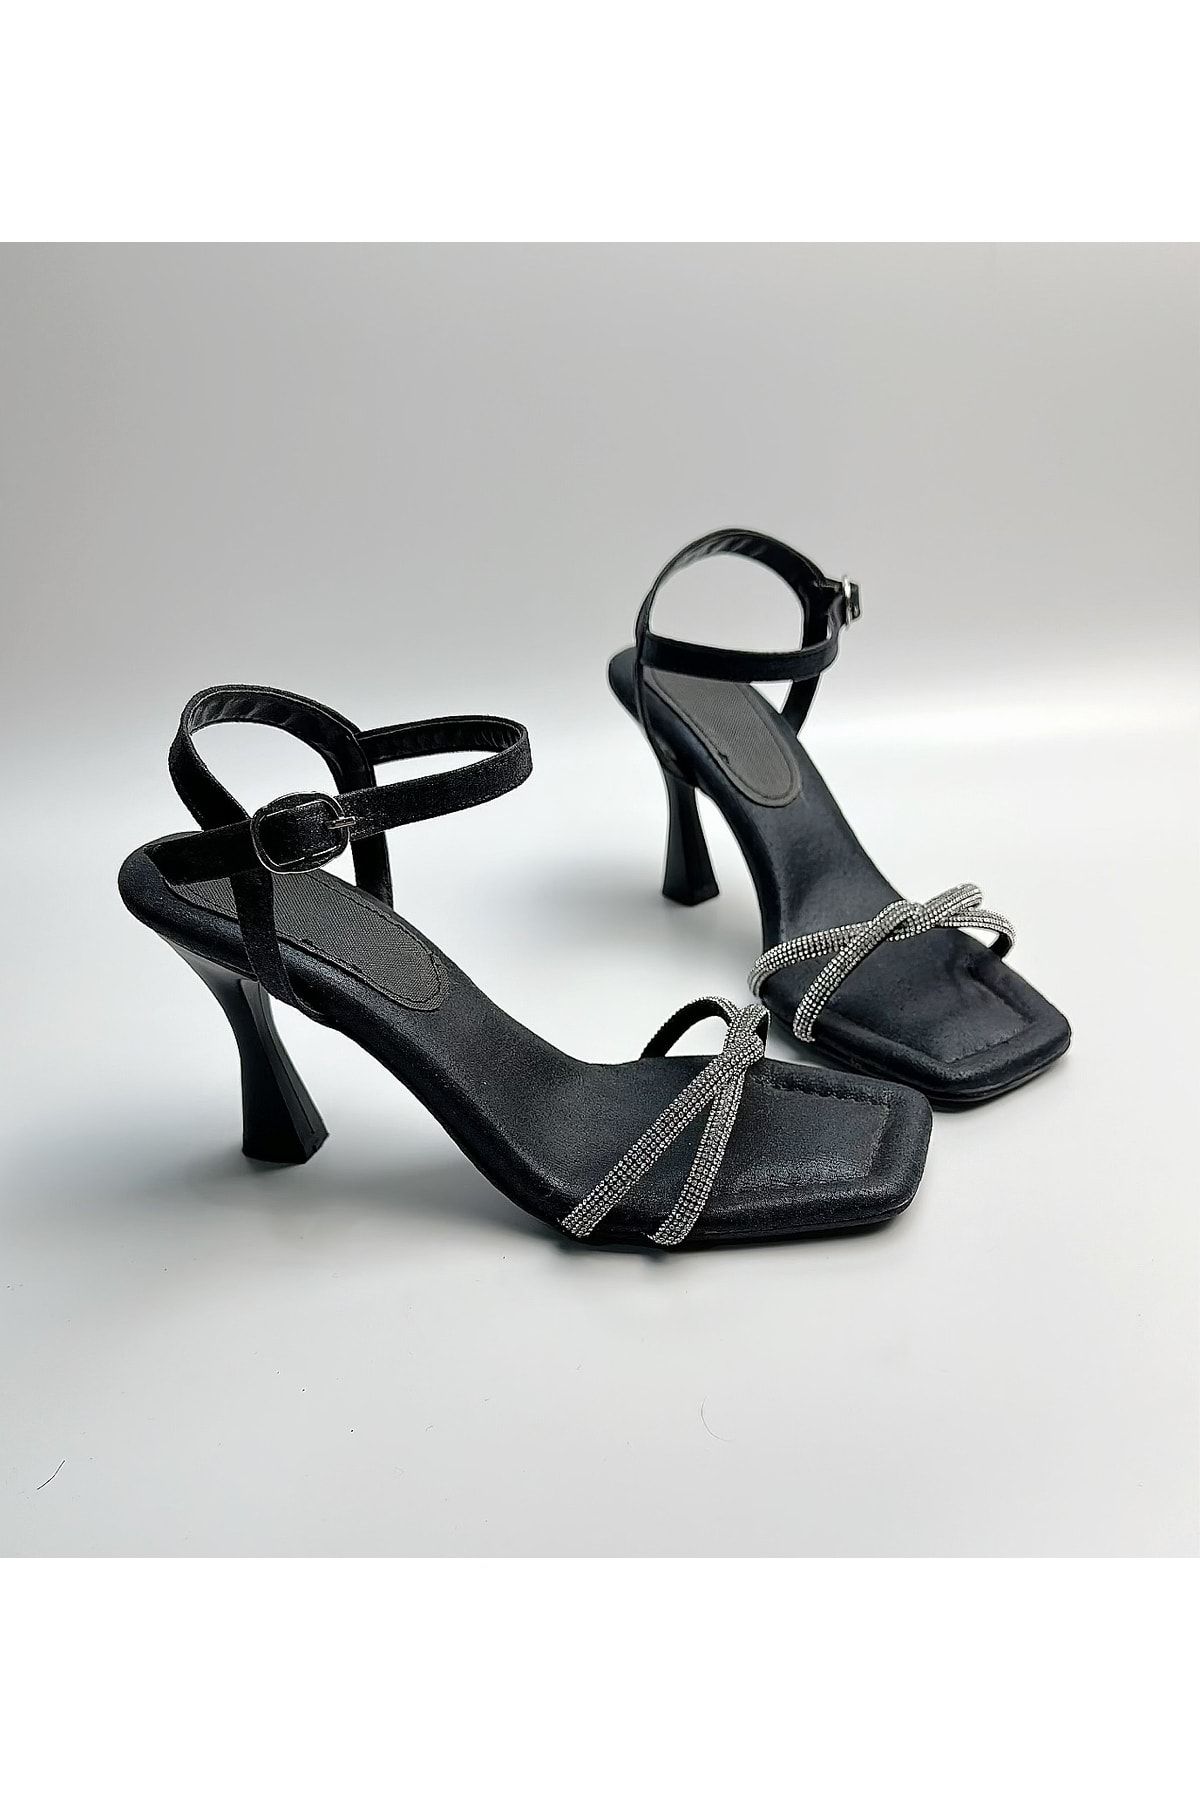 Gloriys Ayakkabı & Çanta Siyah Taşlı 9 Cm Topuklu Ayakkabı Ortopedik Süngerli Taban